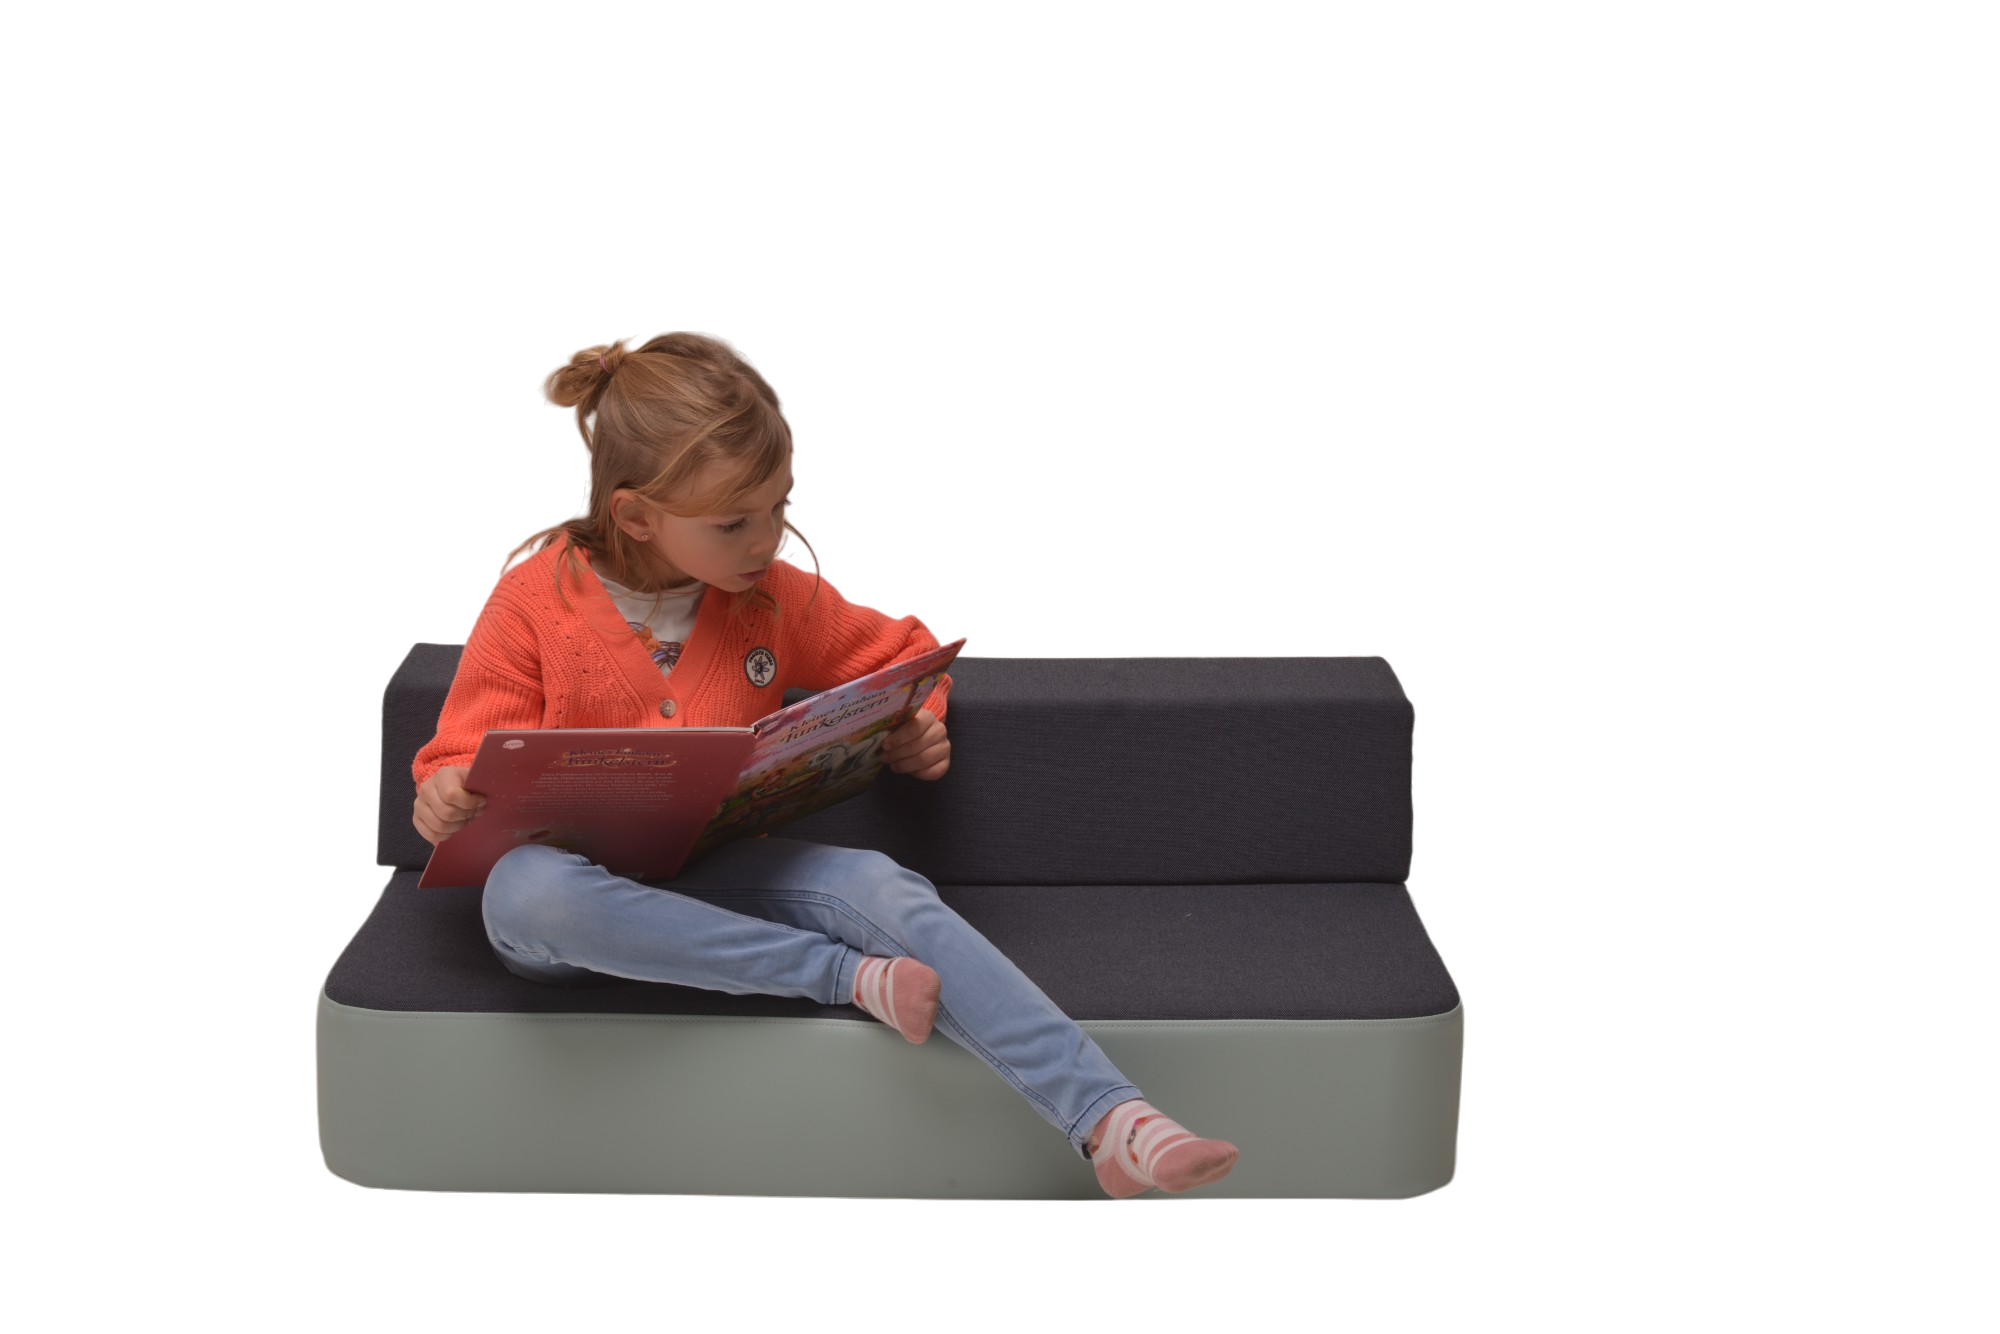 Hüpfpolster mit Rückenkissen, Kind sitzt und liest